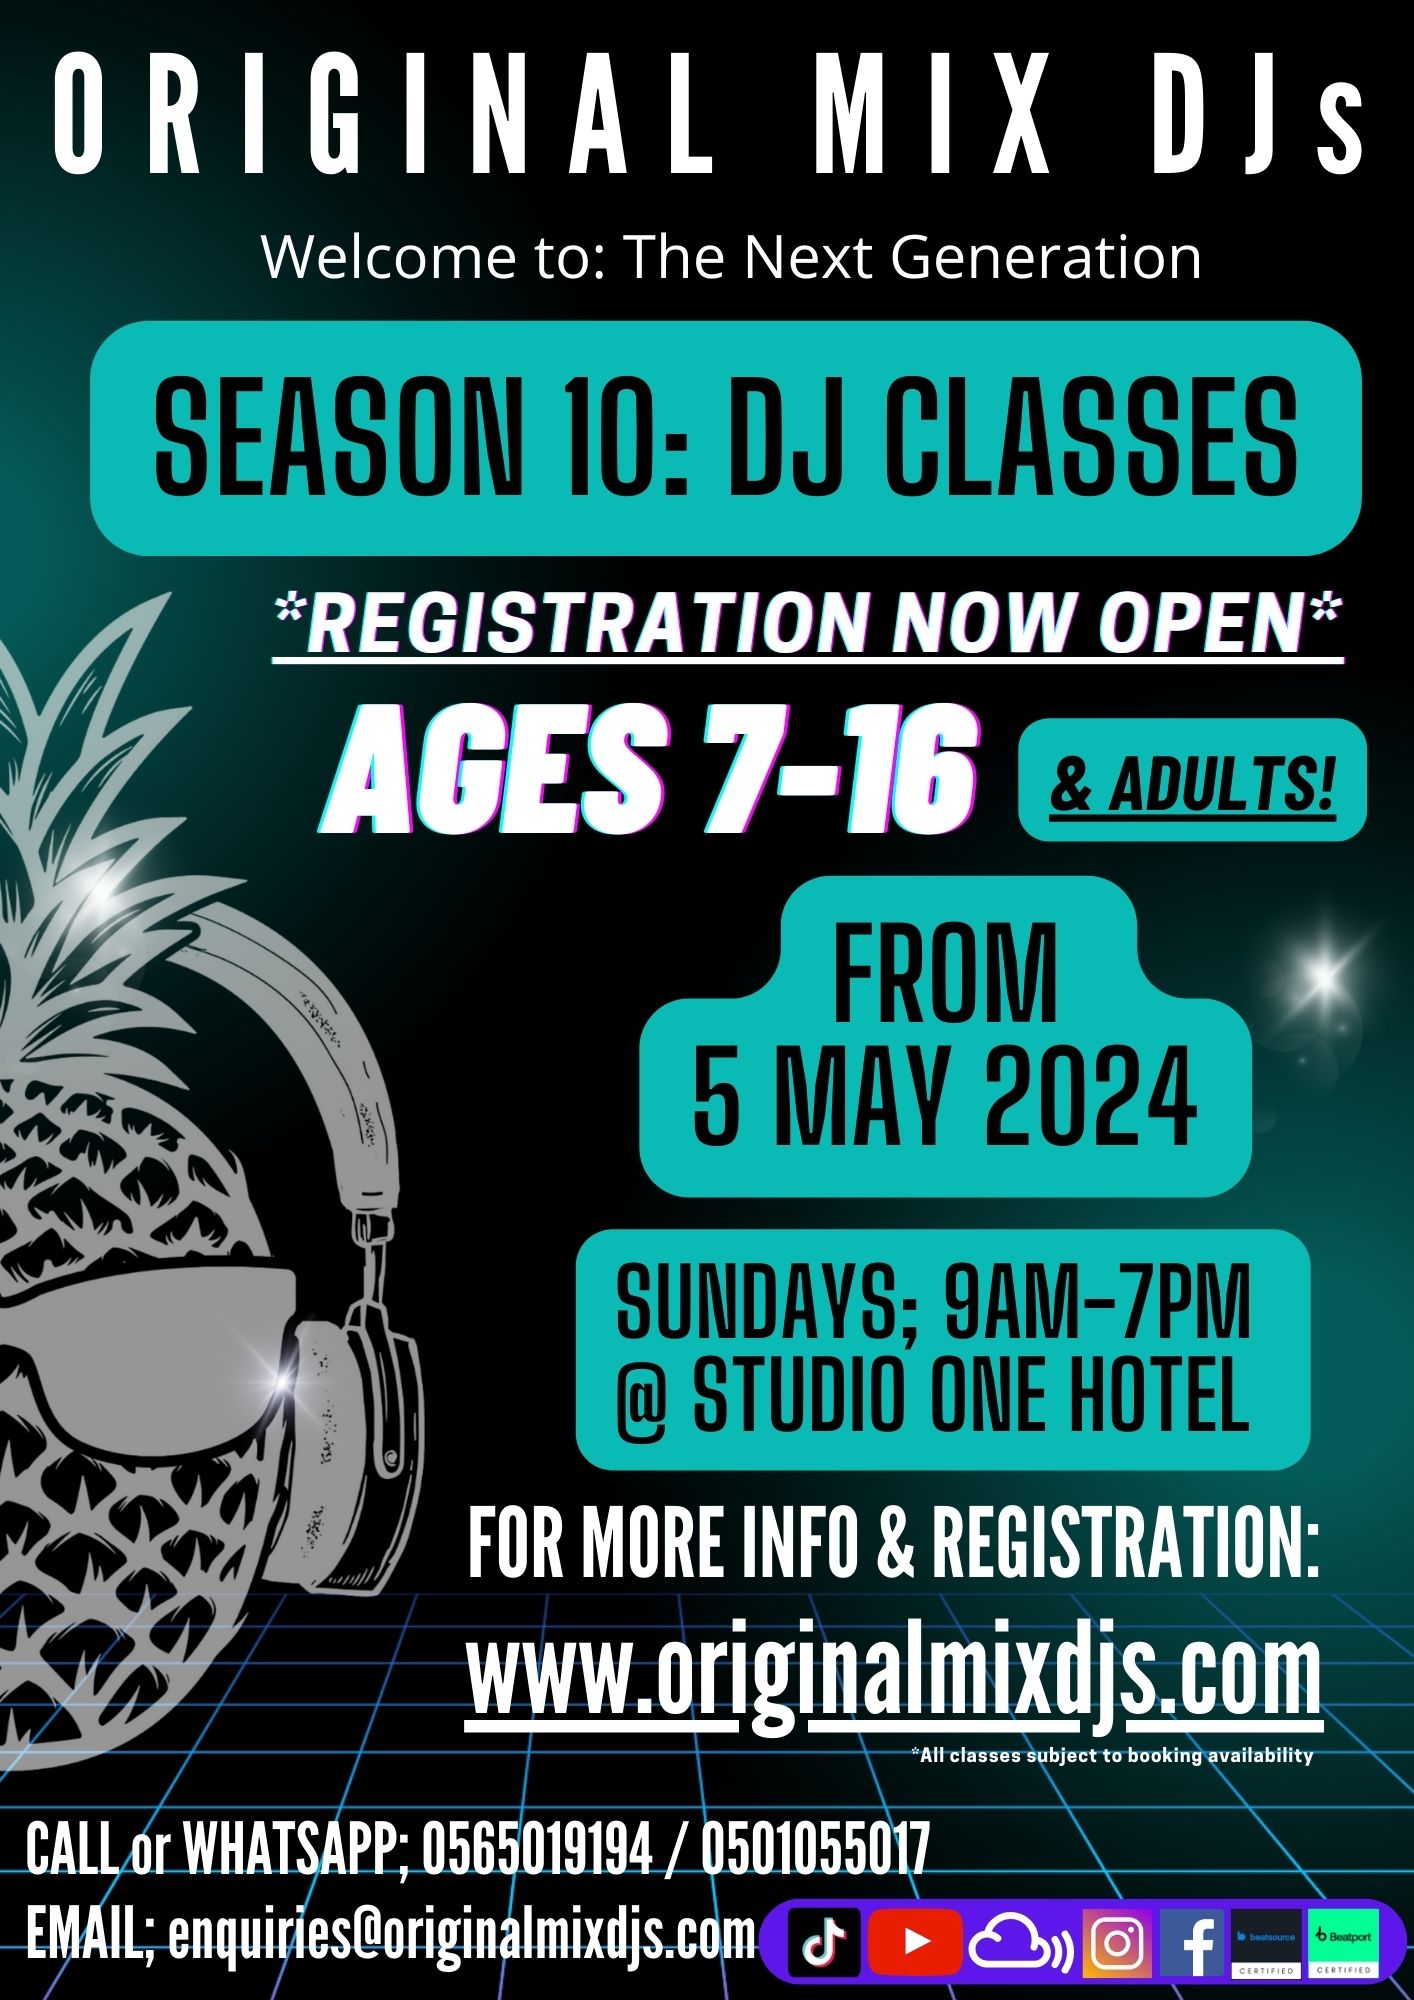 Season 10: DJ Classes Registration Now Open